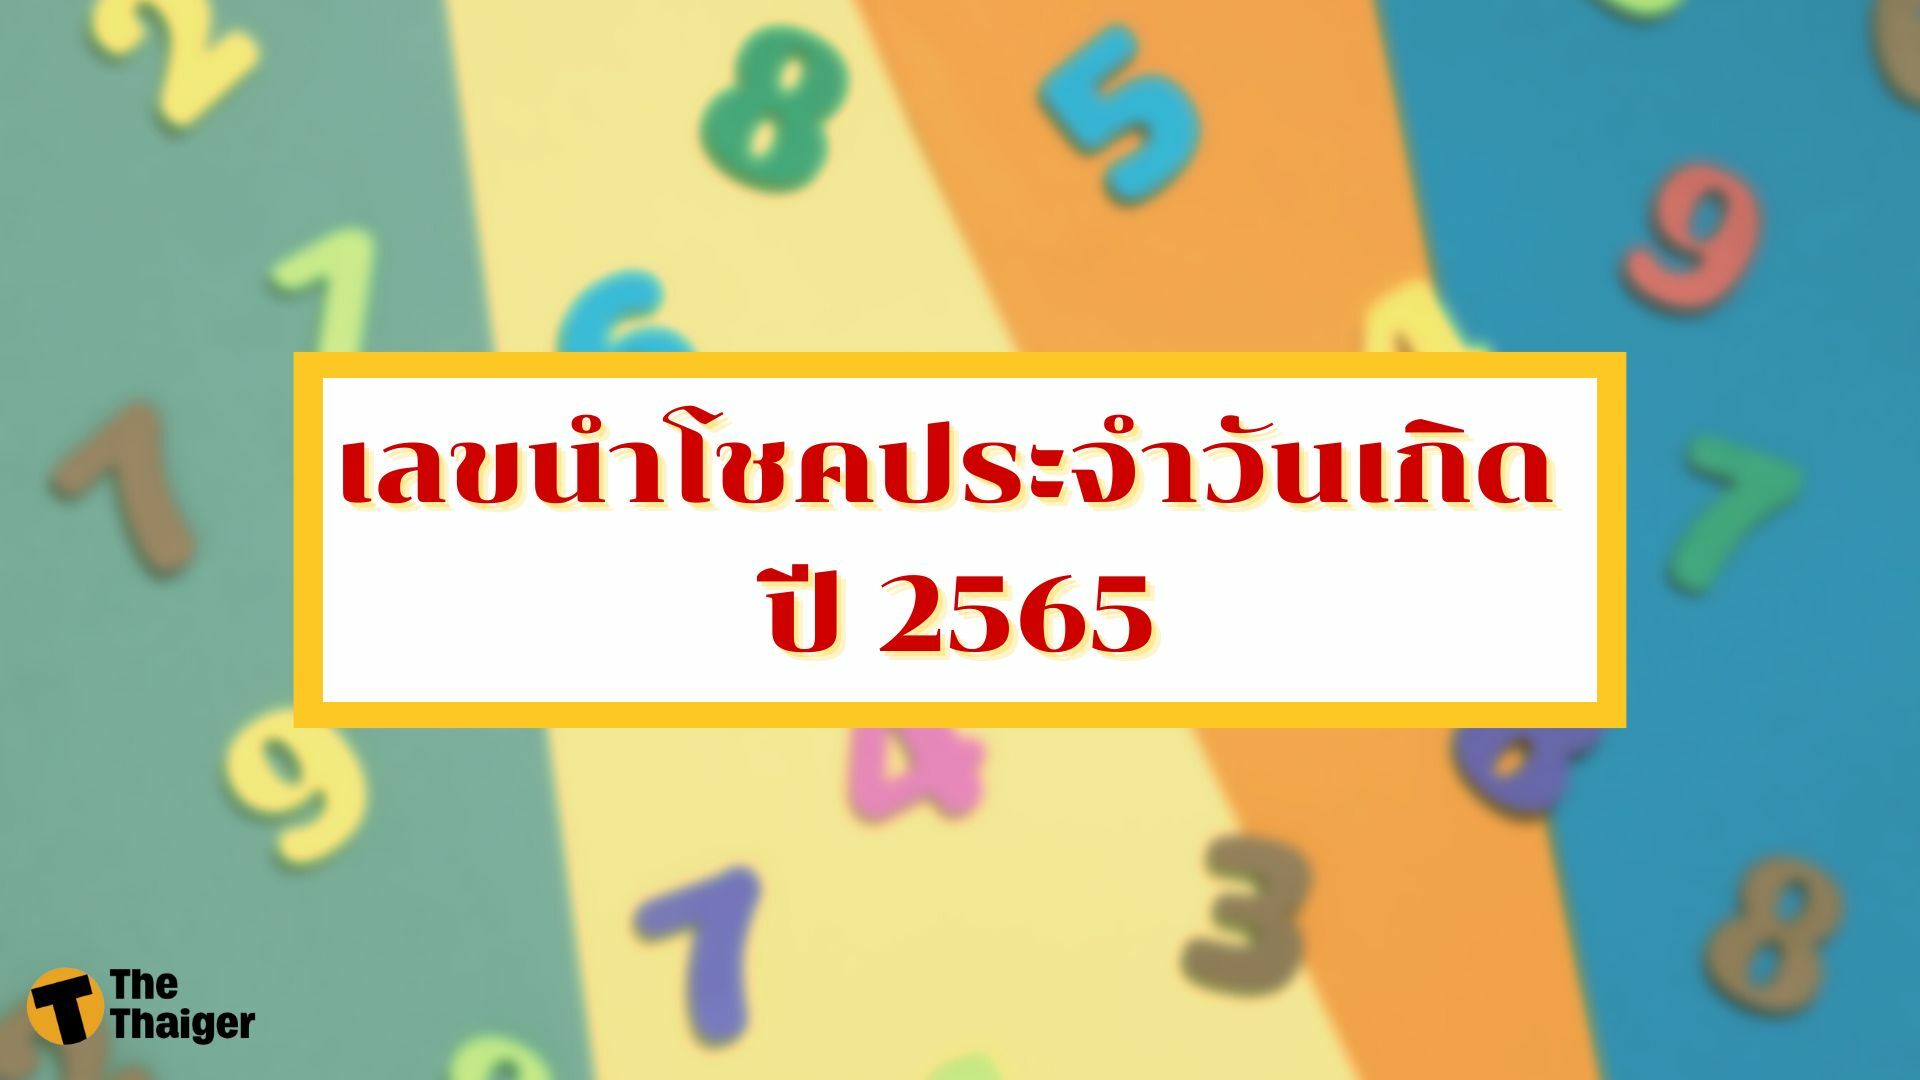 เลขนำโชคประจำวันเกิด 2565 เลขมงคลที่ควรมีติดตัวในชีวิตประจำวัน | Thaiger  ข่าวไทย